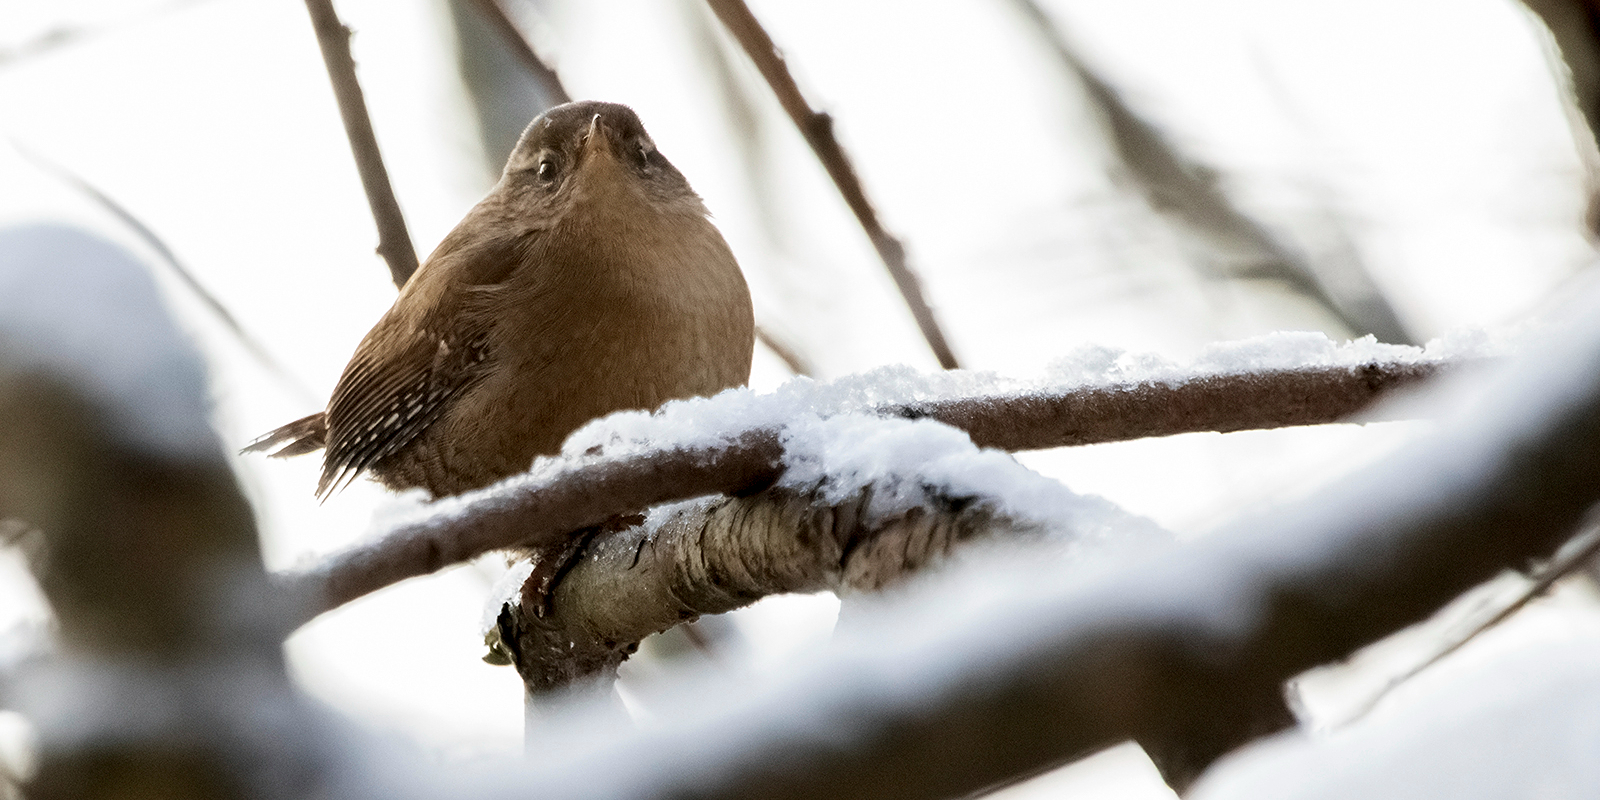 Узнать птицу можно по темно-коричневой окраске. Фото: сайт мэра Москвы